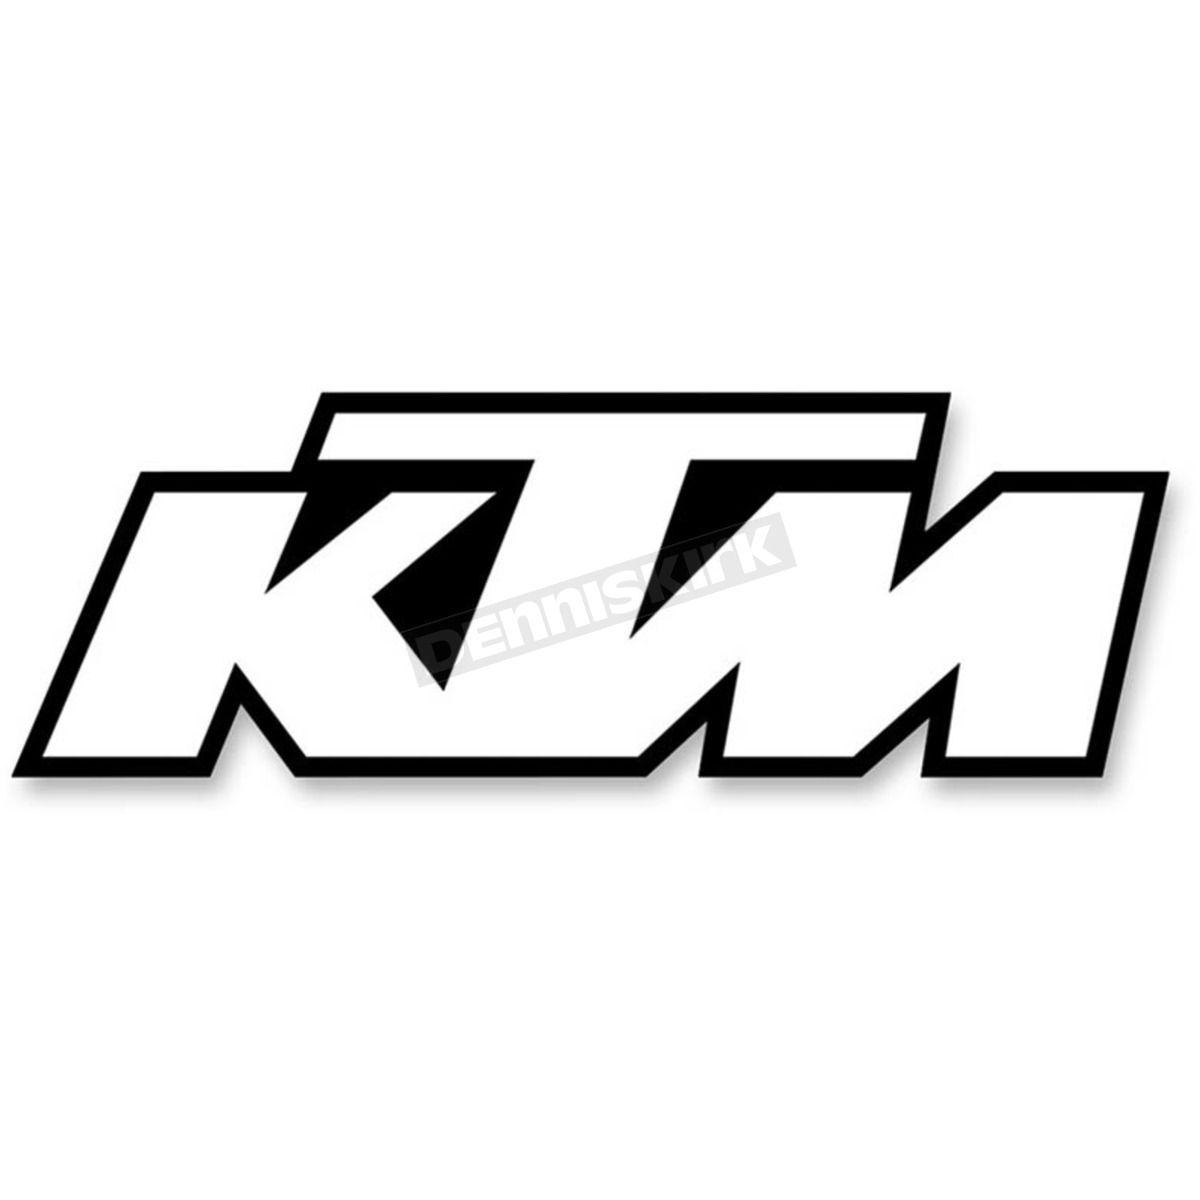 Black and White Dirt Bike Logo - Factory Effex KTM Logo 5 Pack - 19-90500 Dirt Bike Motocross ...